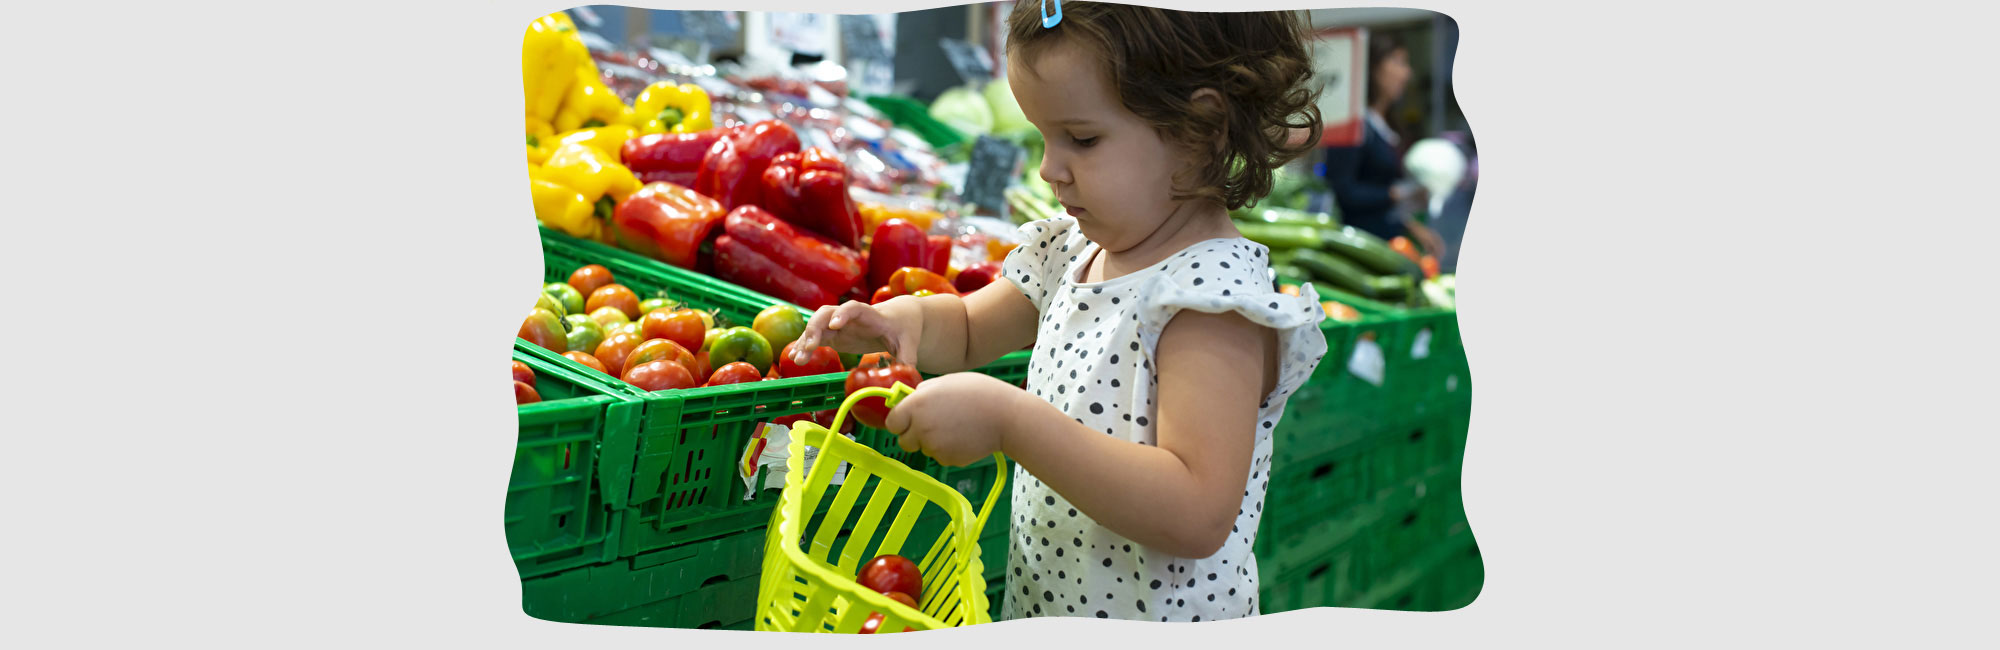 Super- und Einkaufsmarkt Nah und Gut Haible in Hayingen - Bildinhalt: Kleines Mädchen kauft regionales Obst und Gemüse im Einkaufsmarkt mit seinem Körbchen ein.